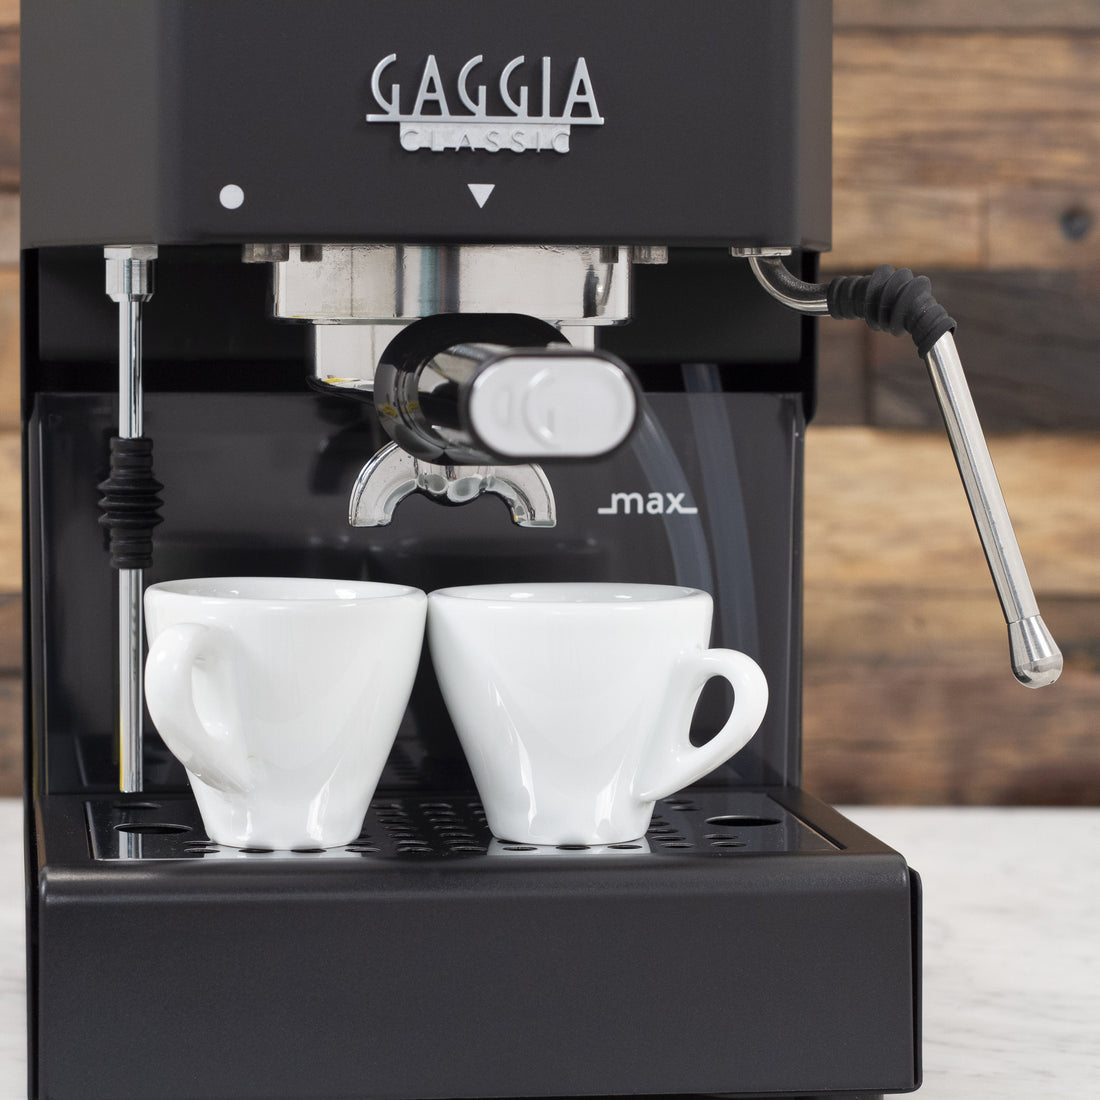 Gaggia Classic Evo Pro Espresso Machine in Thunder Black with Olive Wood